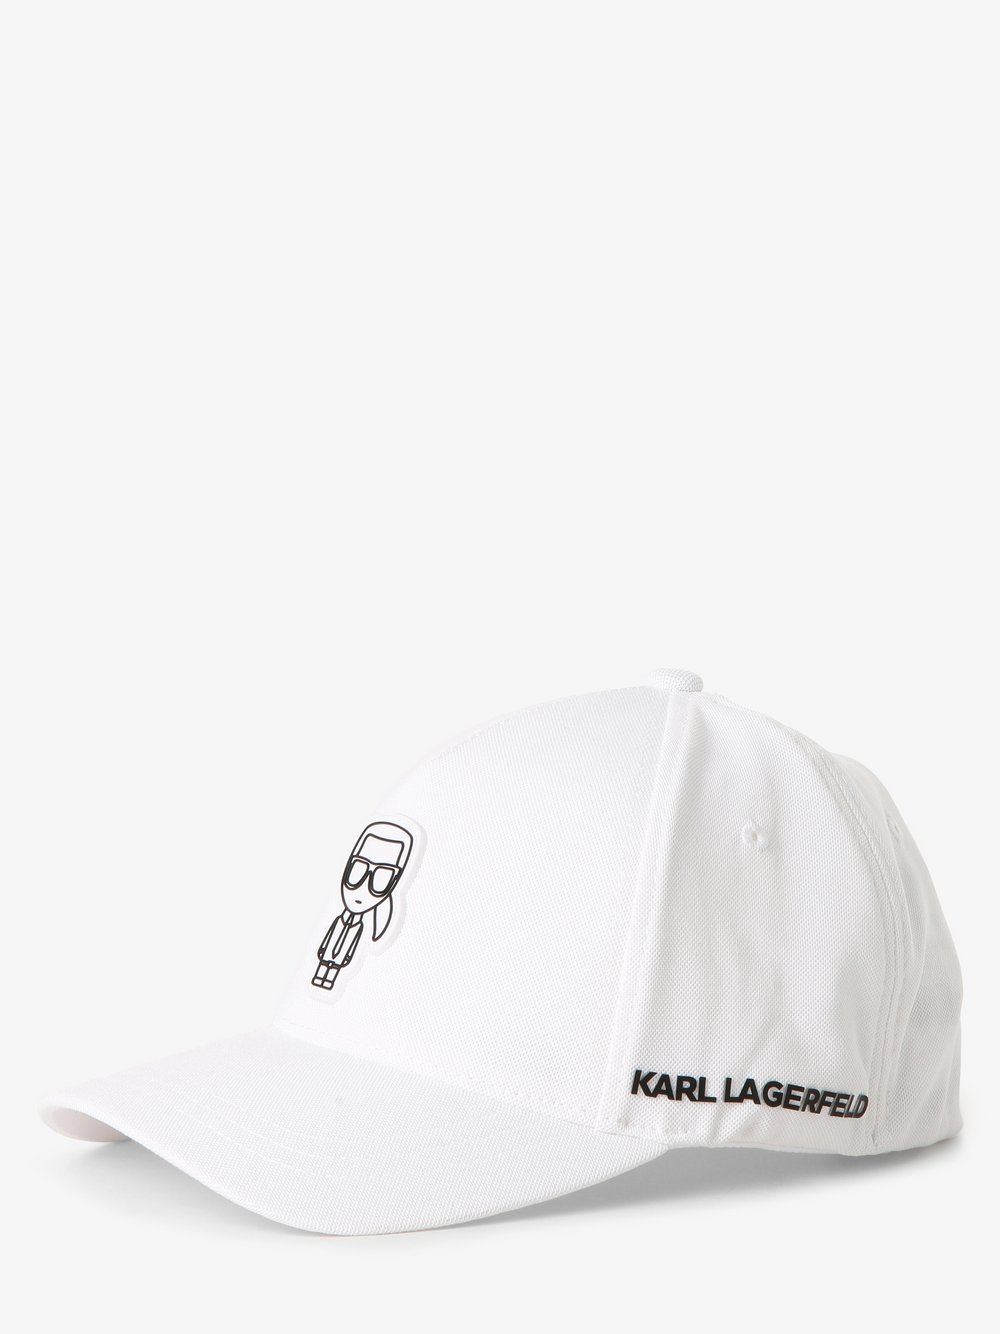 KARL LAGERFELD - Męska czapka z daszkiem, biały